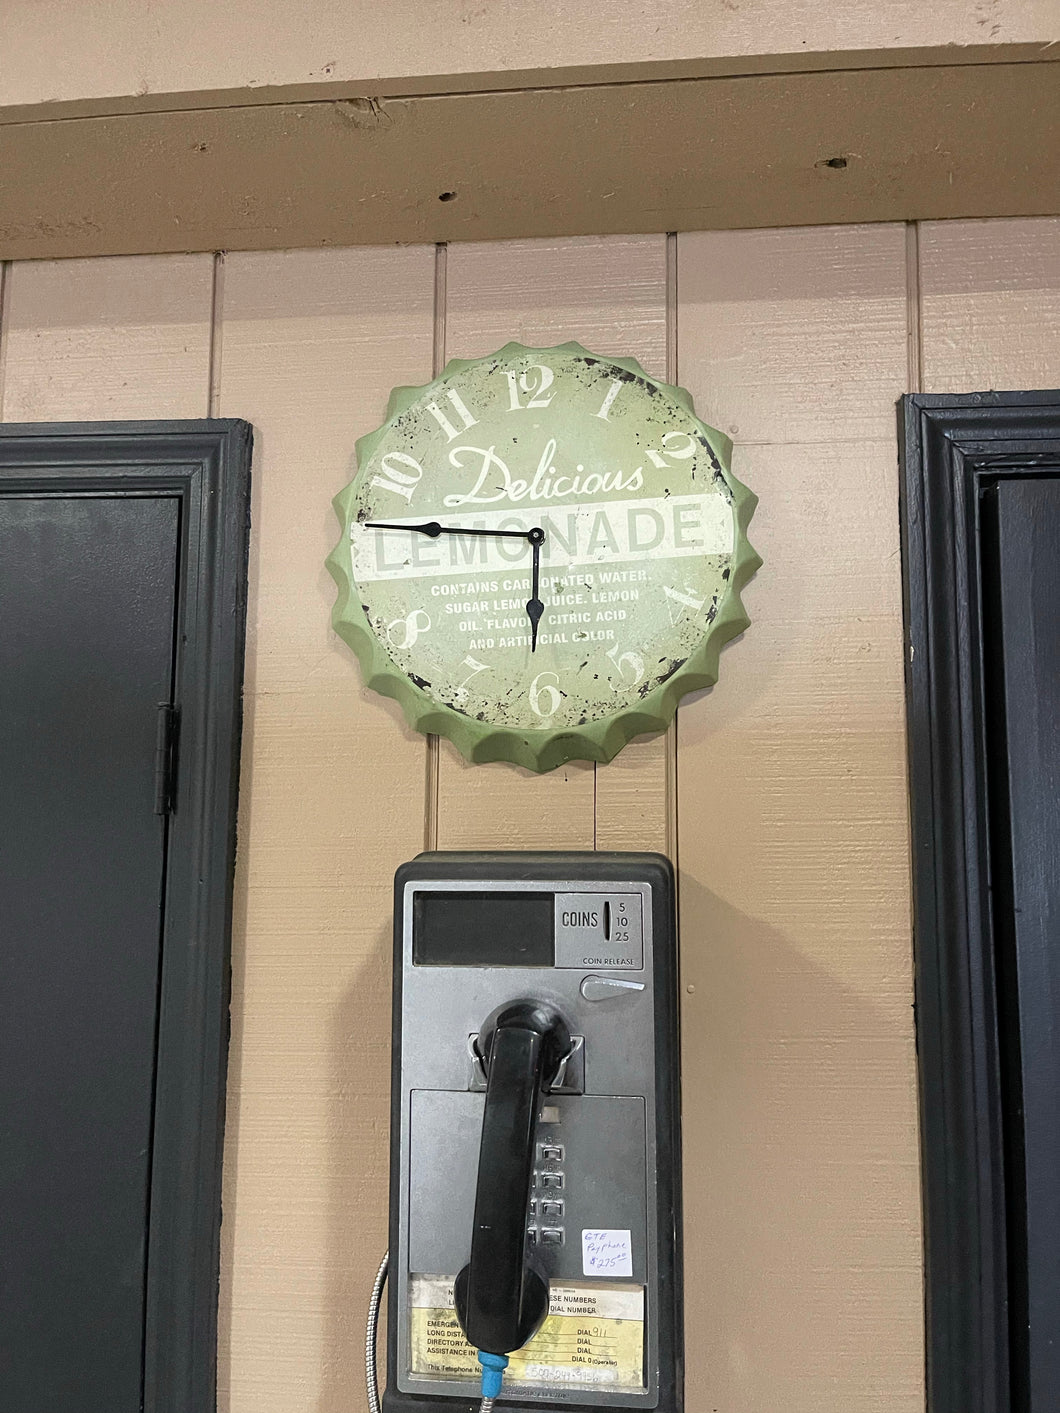 Lemonade clock reproduction?